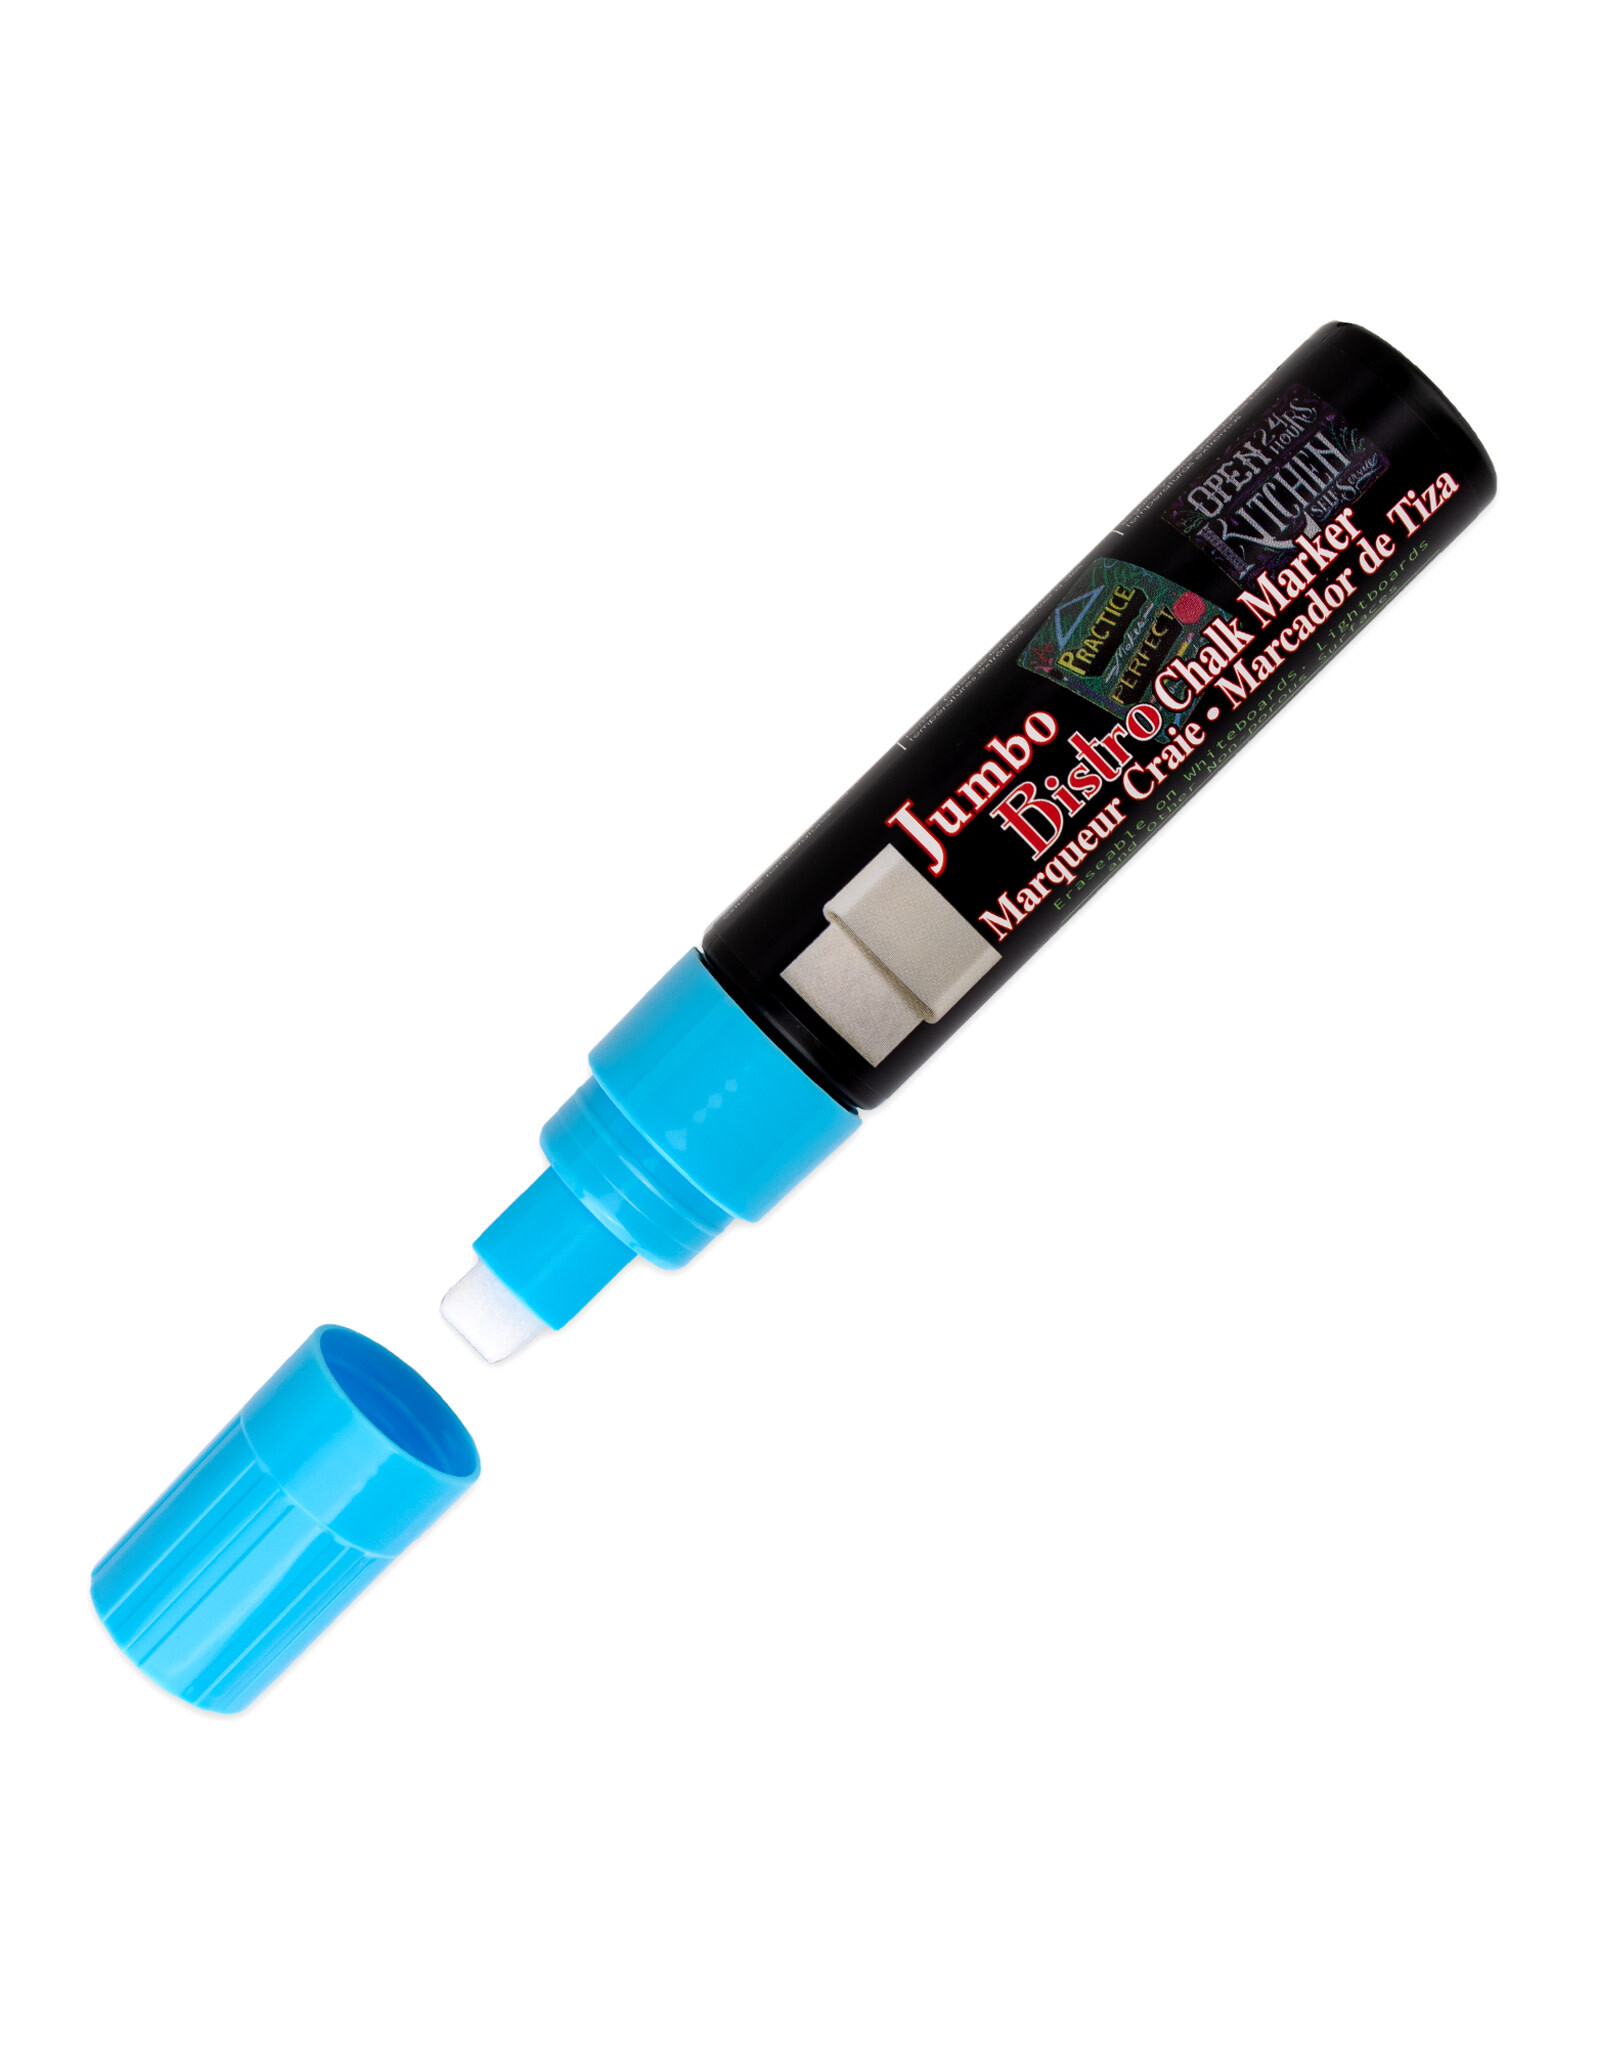 Uchida Uchida Bistro Chalk Marker, Fluorescent Blue, 16mm